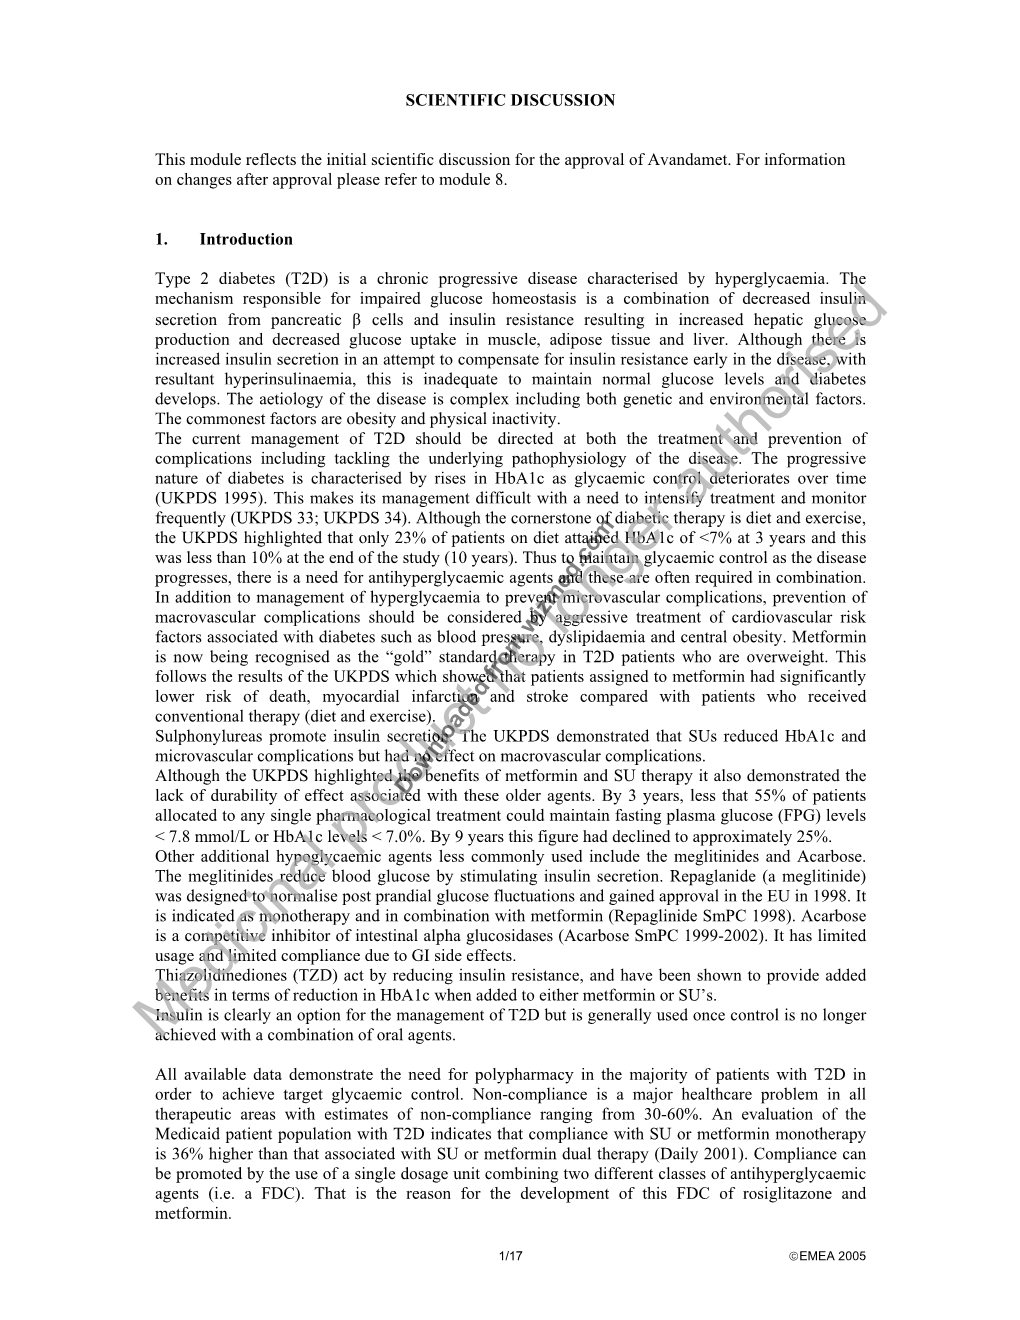 Avandamet, INN-Rosiglitazone/Metformin